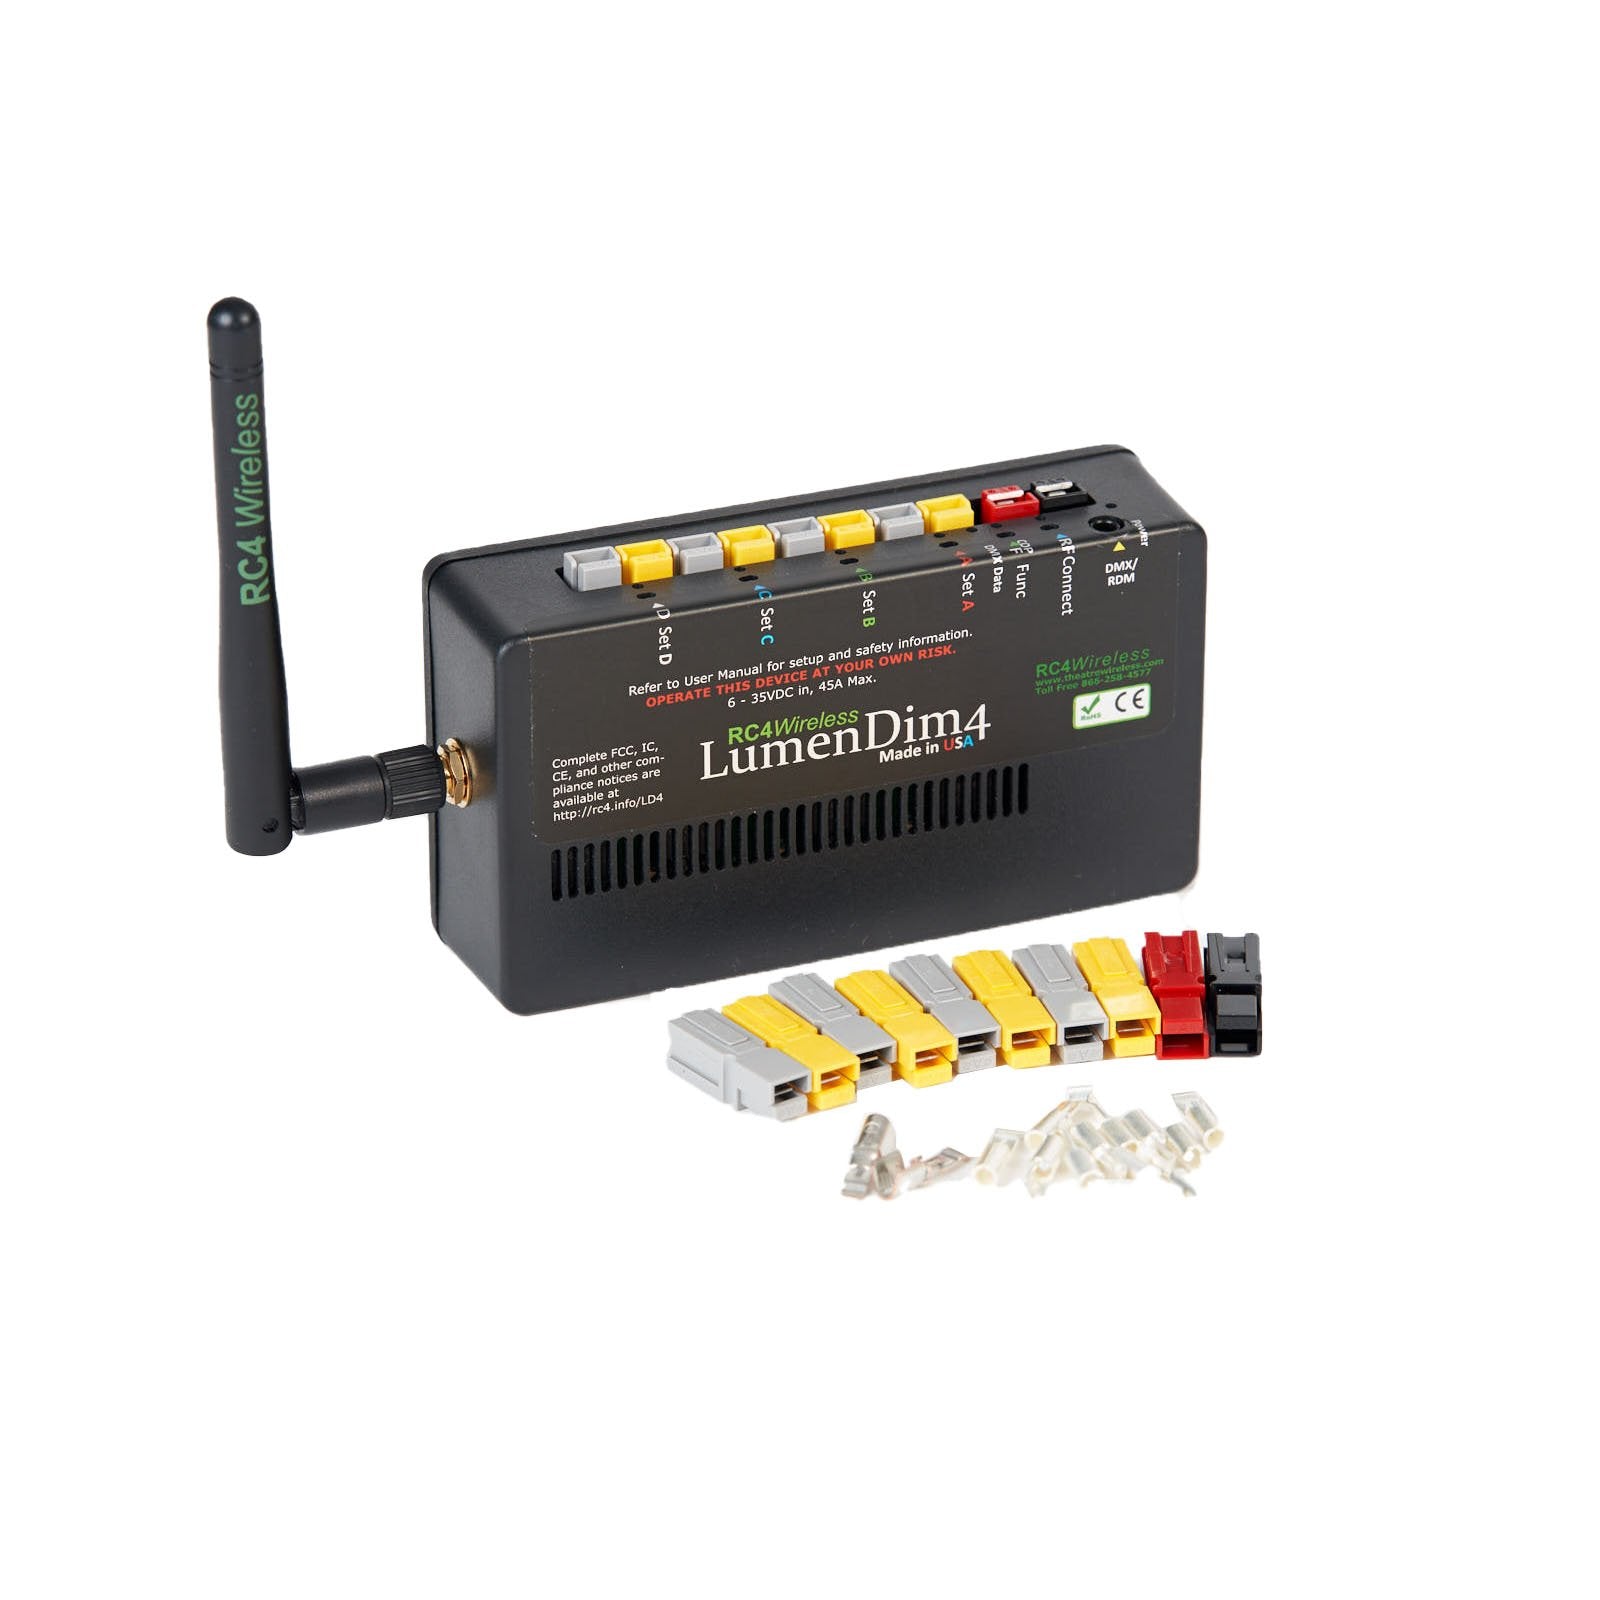 LumenDim4 - 4 Channel CRMX Wireless Dimmer